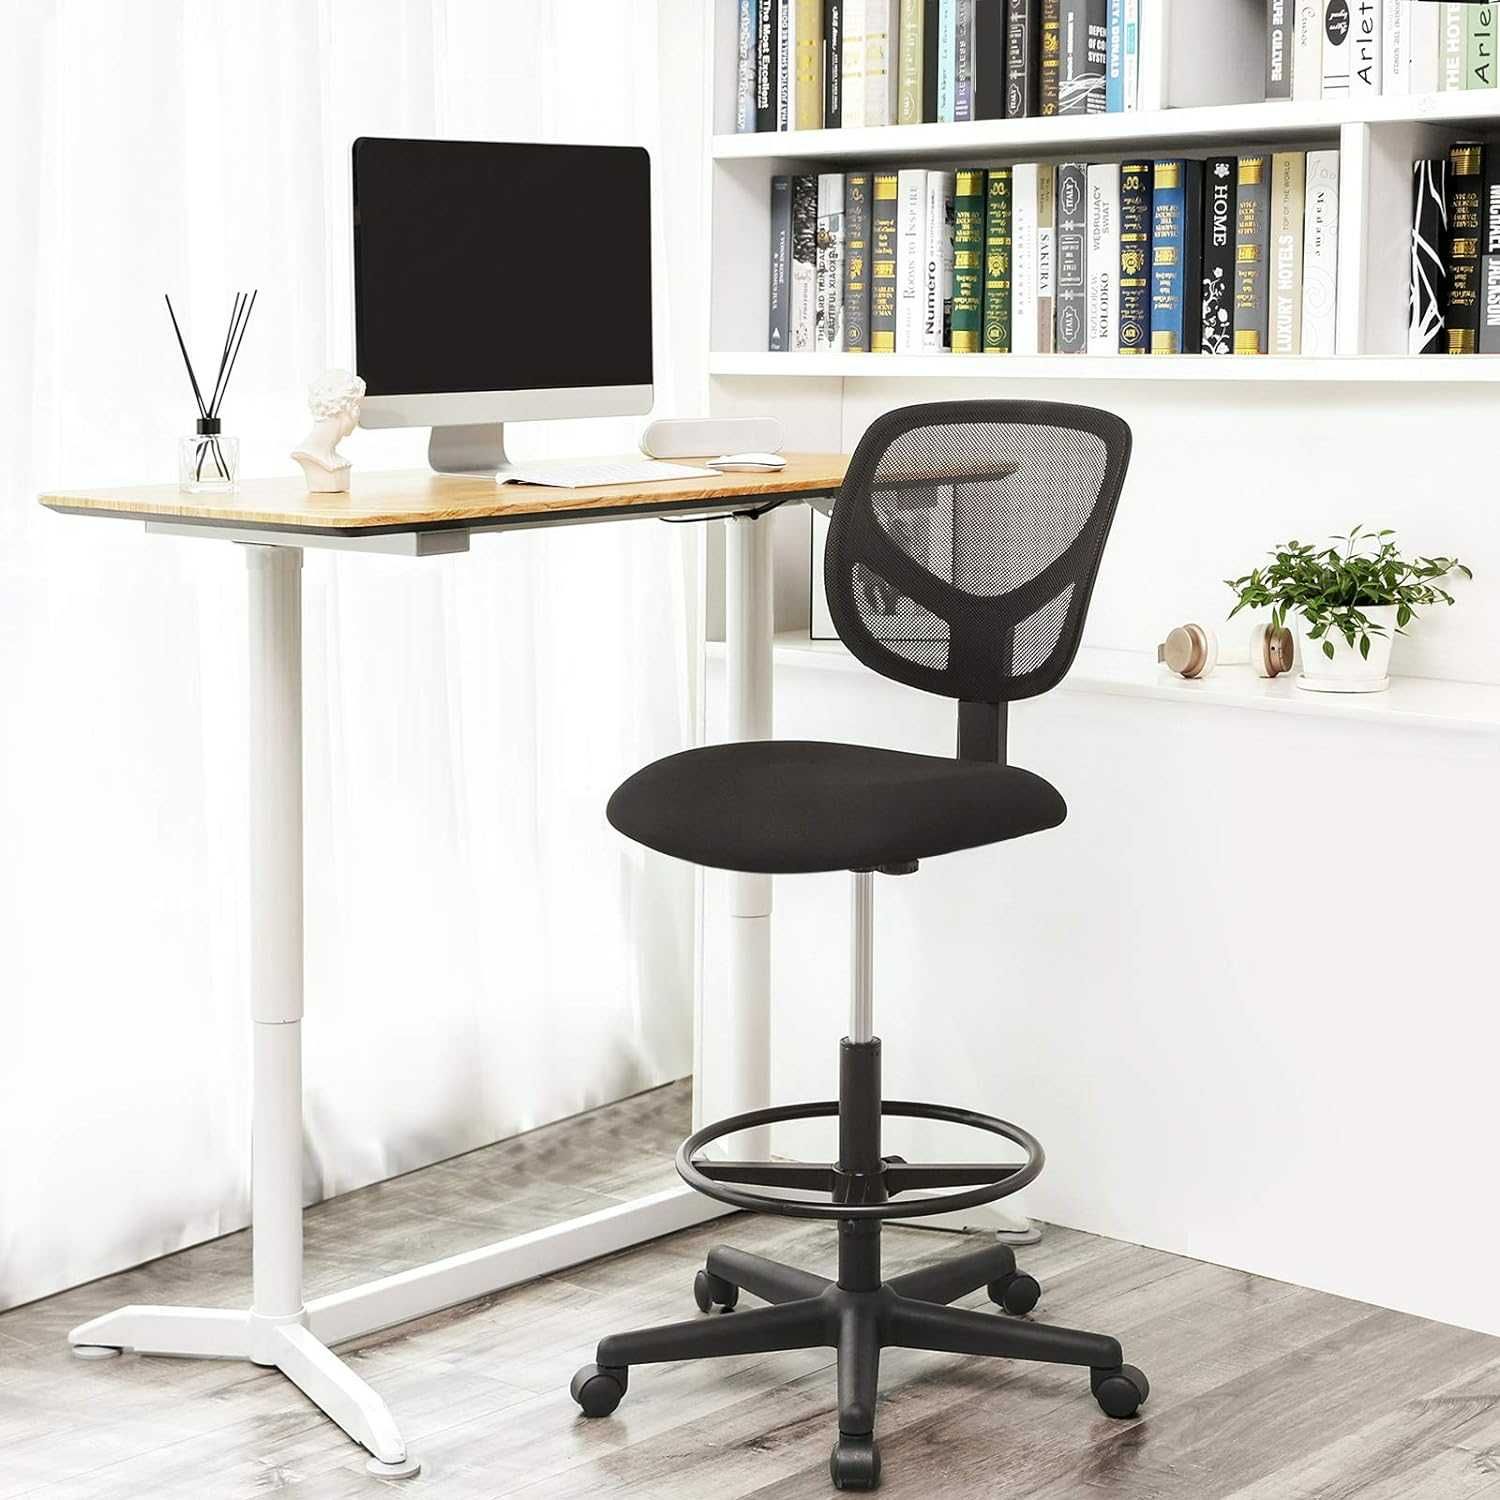 5M4 -20% fotel biurowy krzesło biurowe do biurka stojącego 120KG